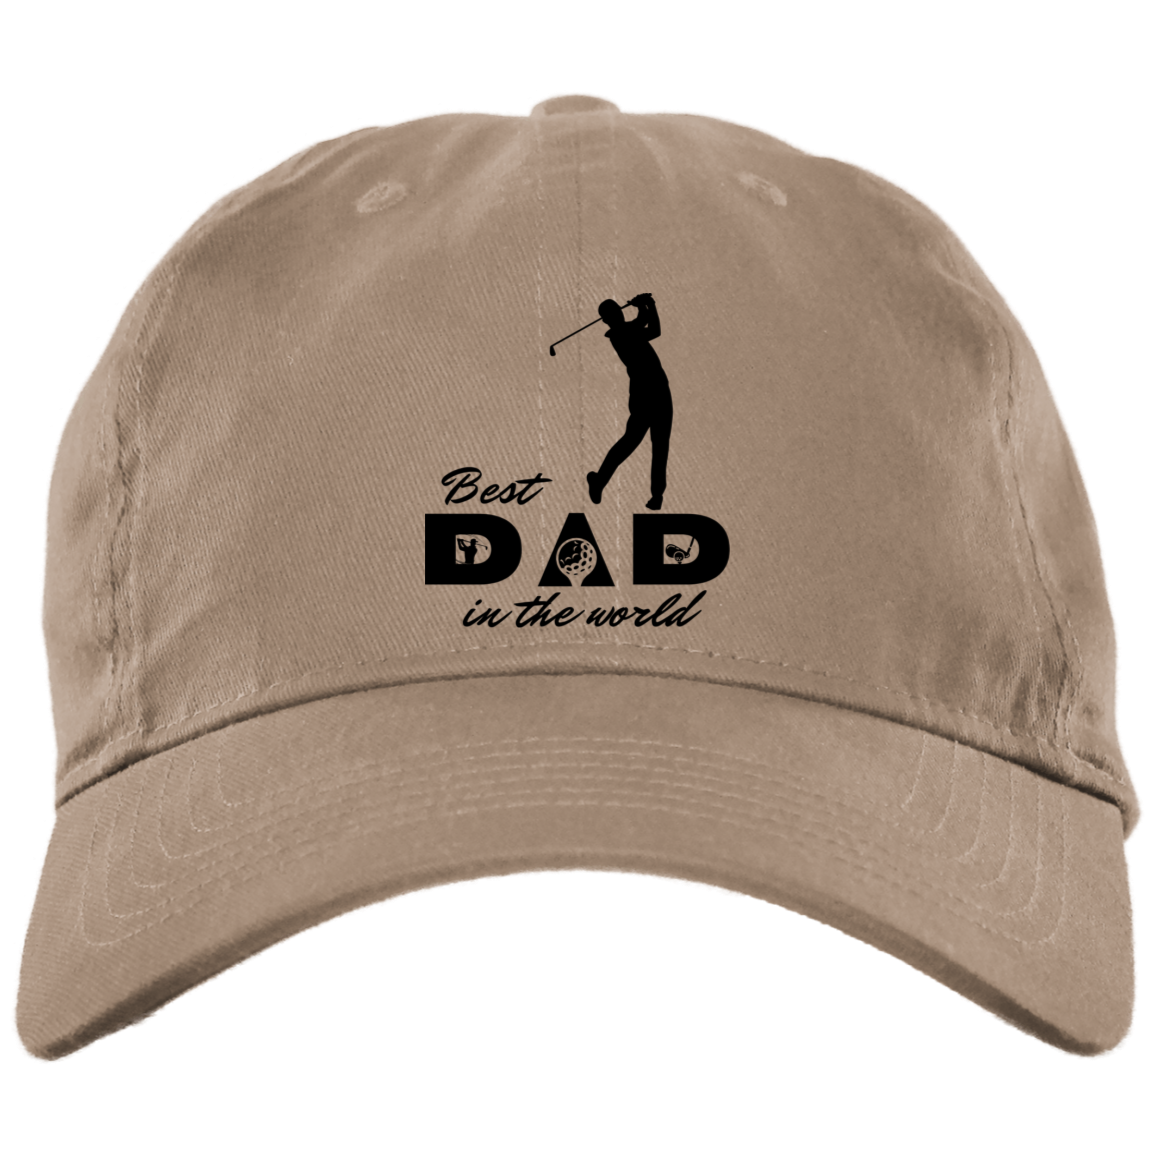 Golf Dad 2 Hat